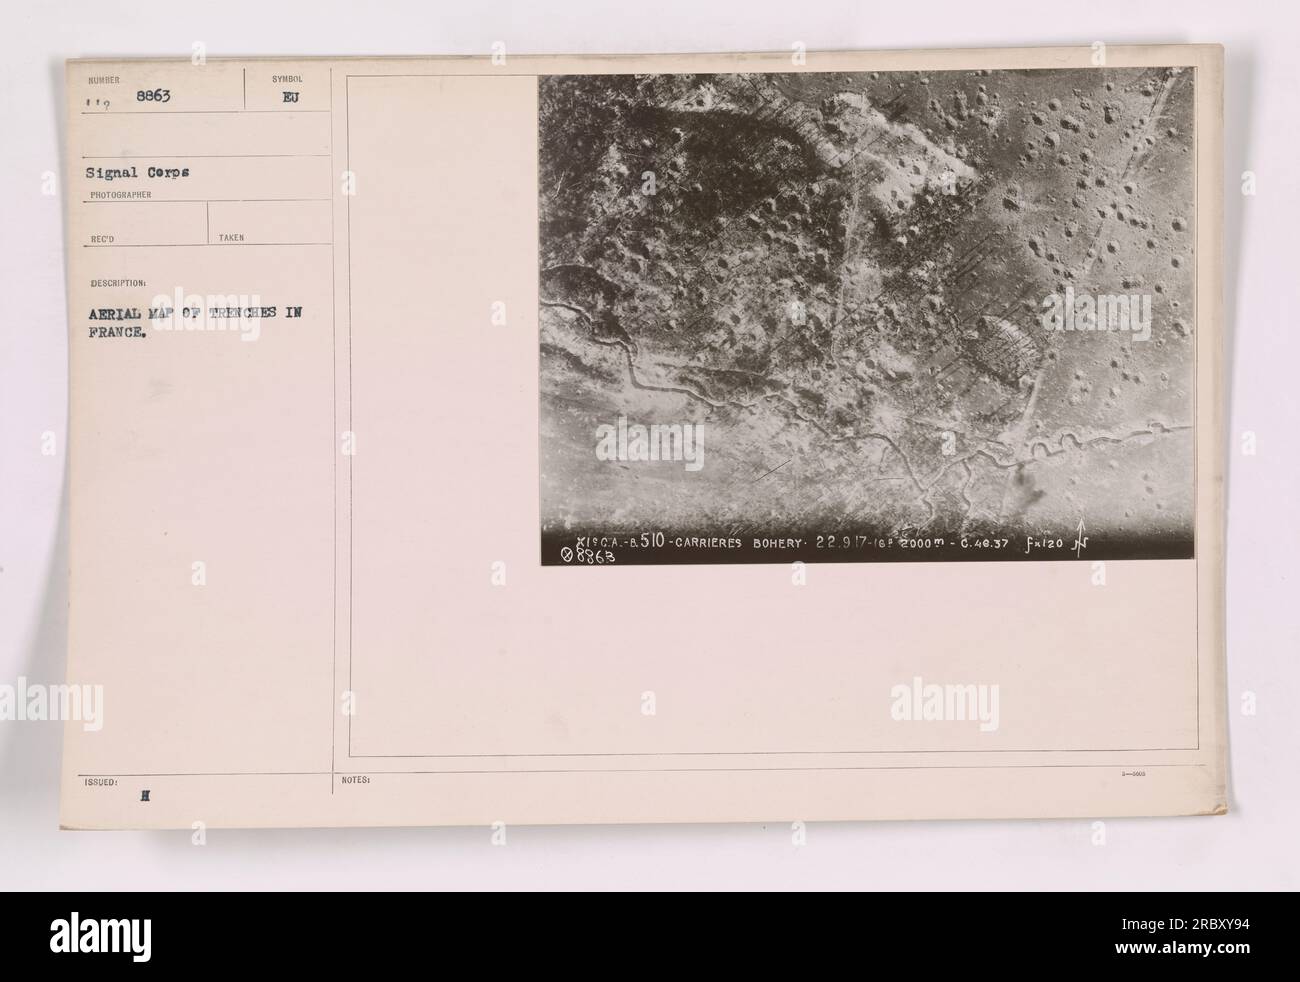 Luftkarte von Gräben in Frankreich während des Ersten Weltkriegs. Das Foto zeigt detaillierte Gräben zusammen mit entsprechenden Notizen wie ICA-510-CARRIERES BOHERY und ihren genauen Koordinaten 22,917-16. Das Bild wurde aus einem Flugzeug in einer Höhe von 2000m m um 8:40:37 Uhr morgens aufgenommen. Ihre Referenz ist F-120. Stockfoto